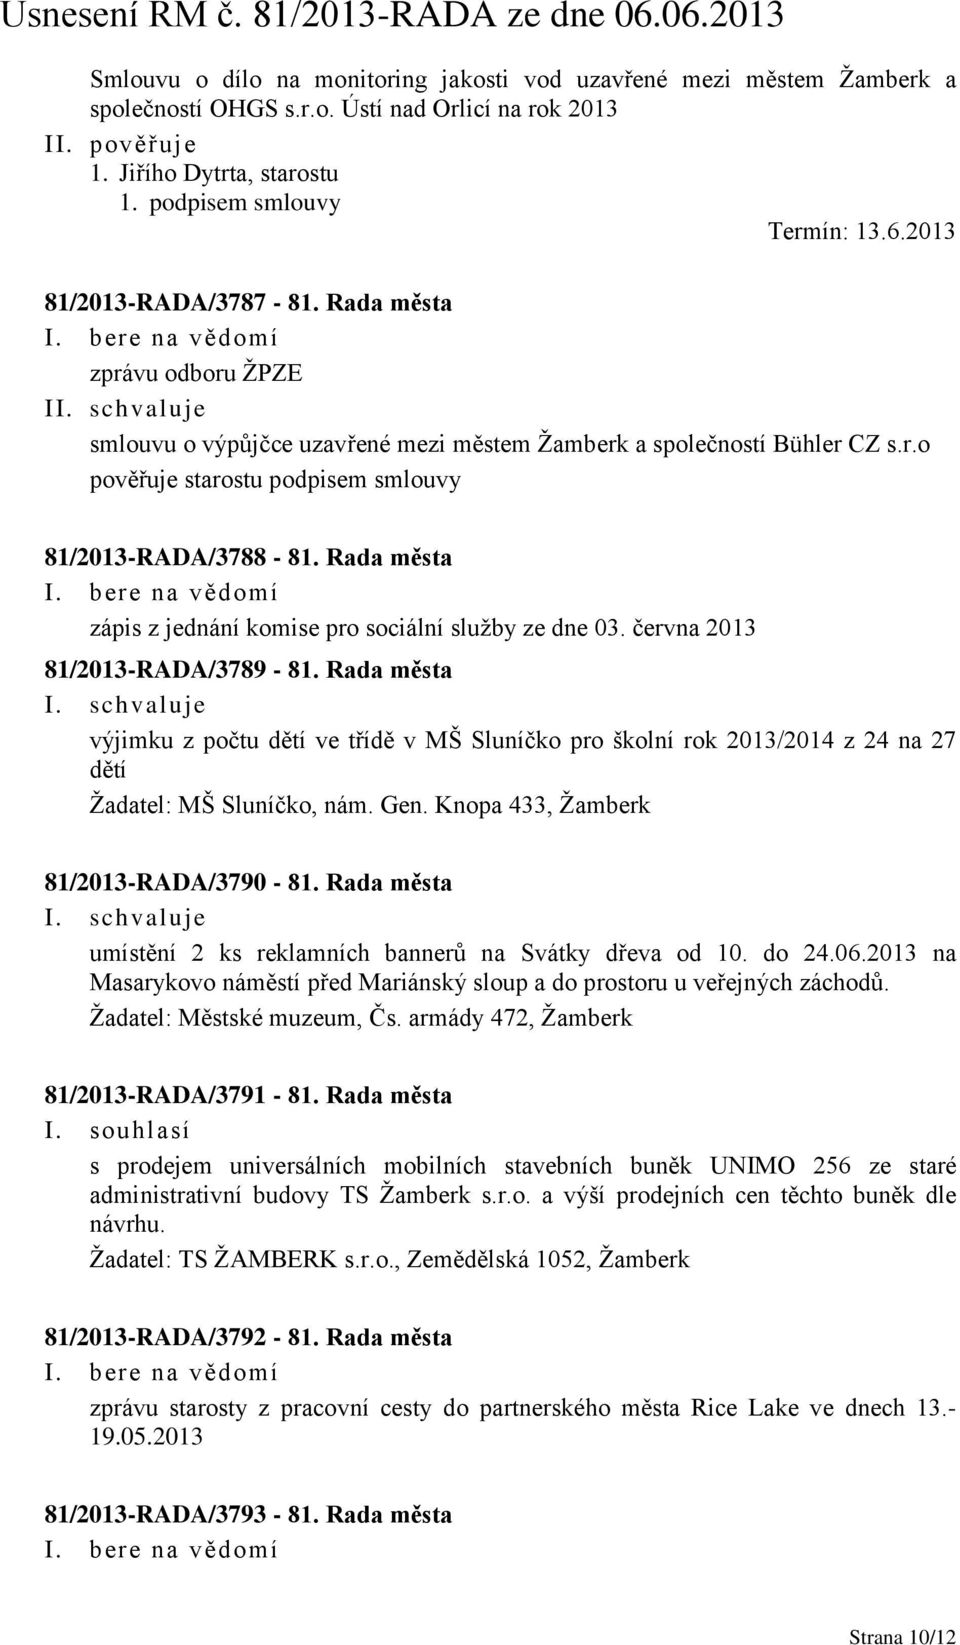 Rada města zápis z jednání komise pro sociální služby ze dne 03. června 2013 81/2013-RADA/3789-81.